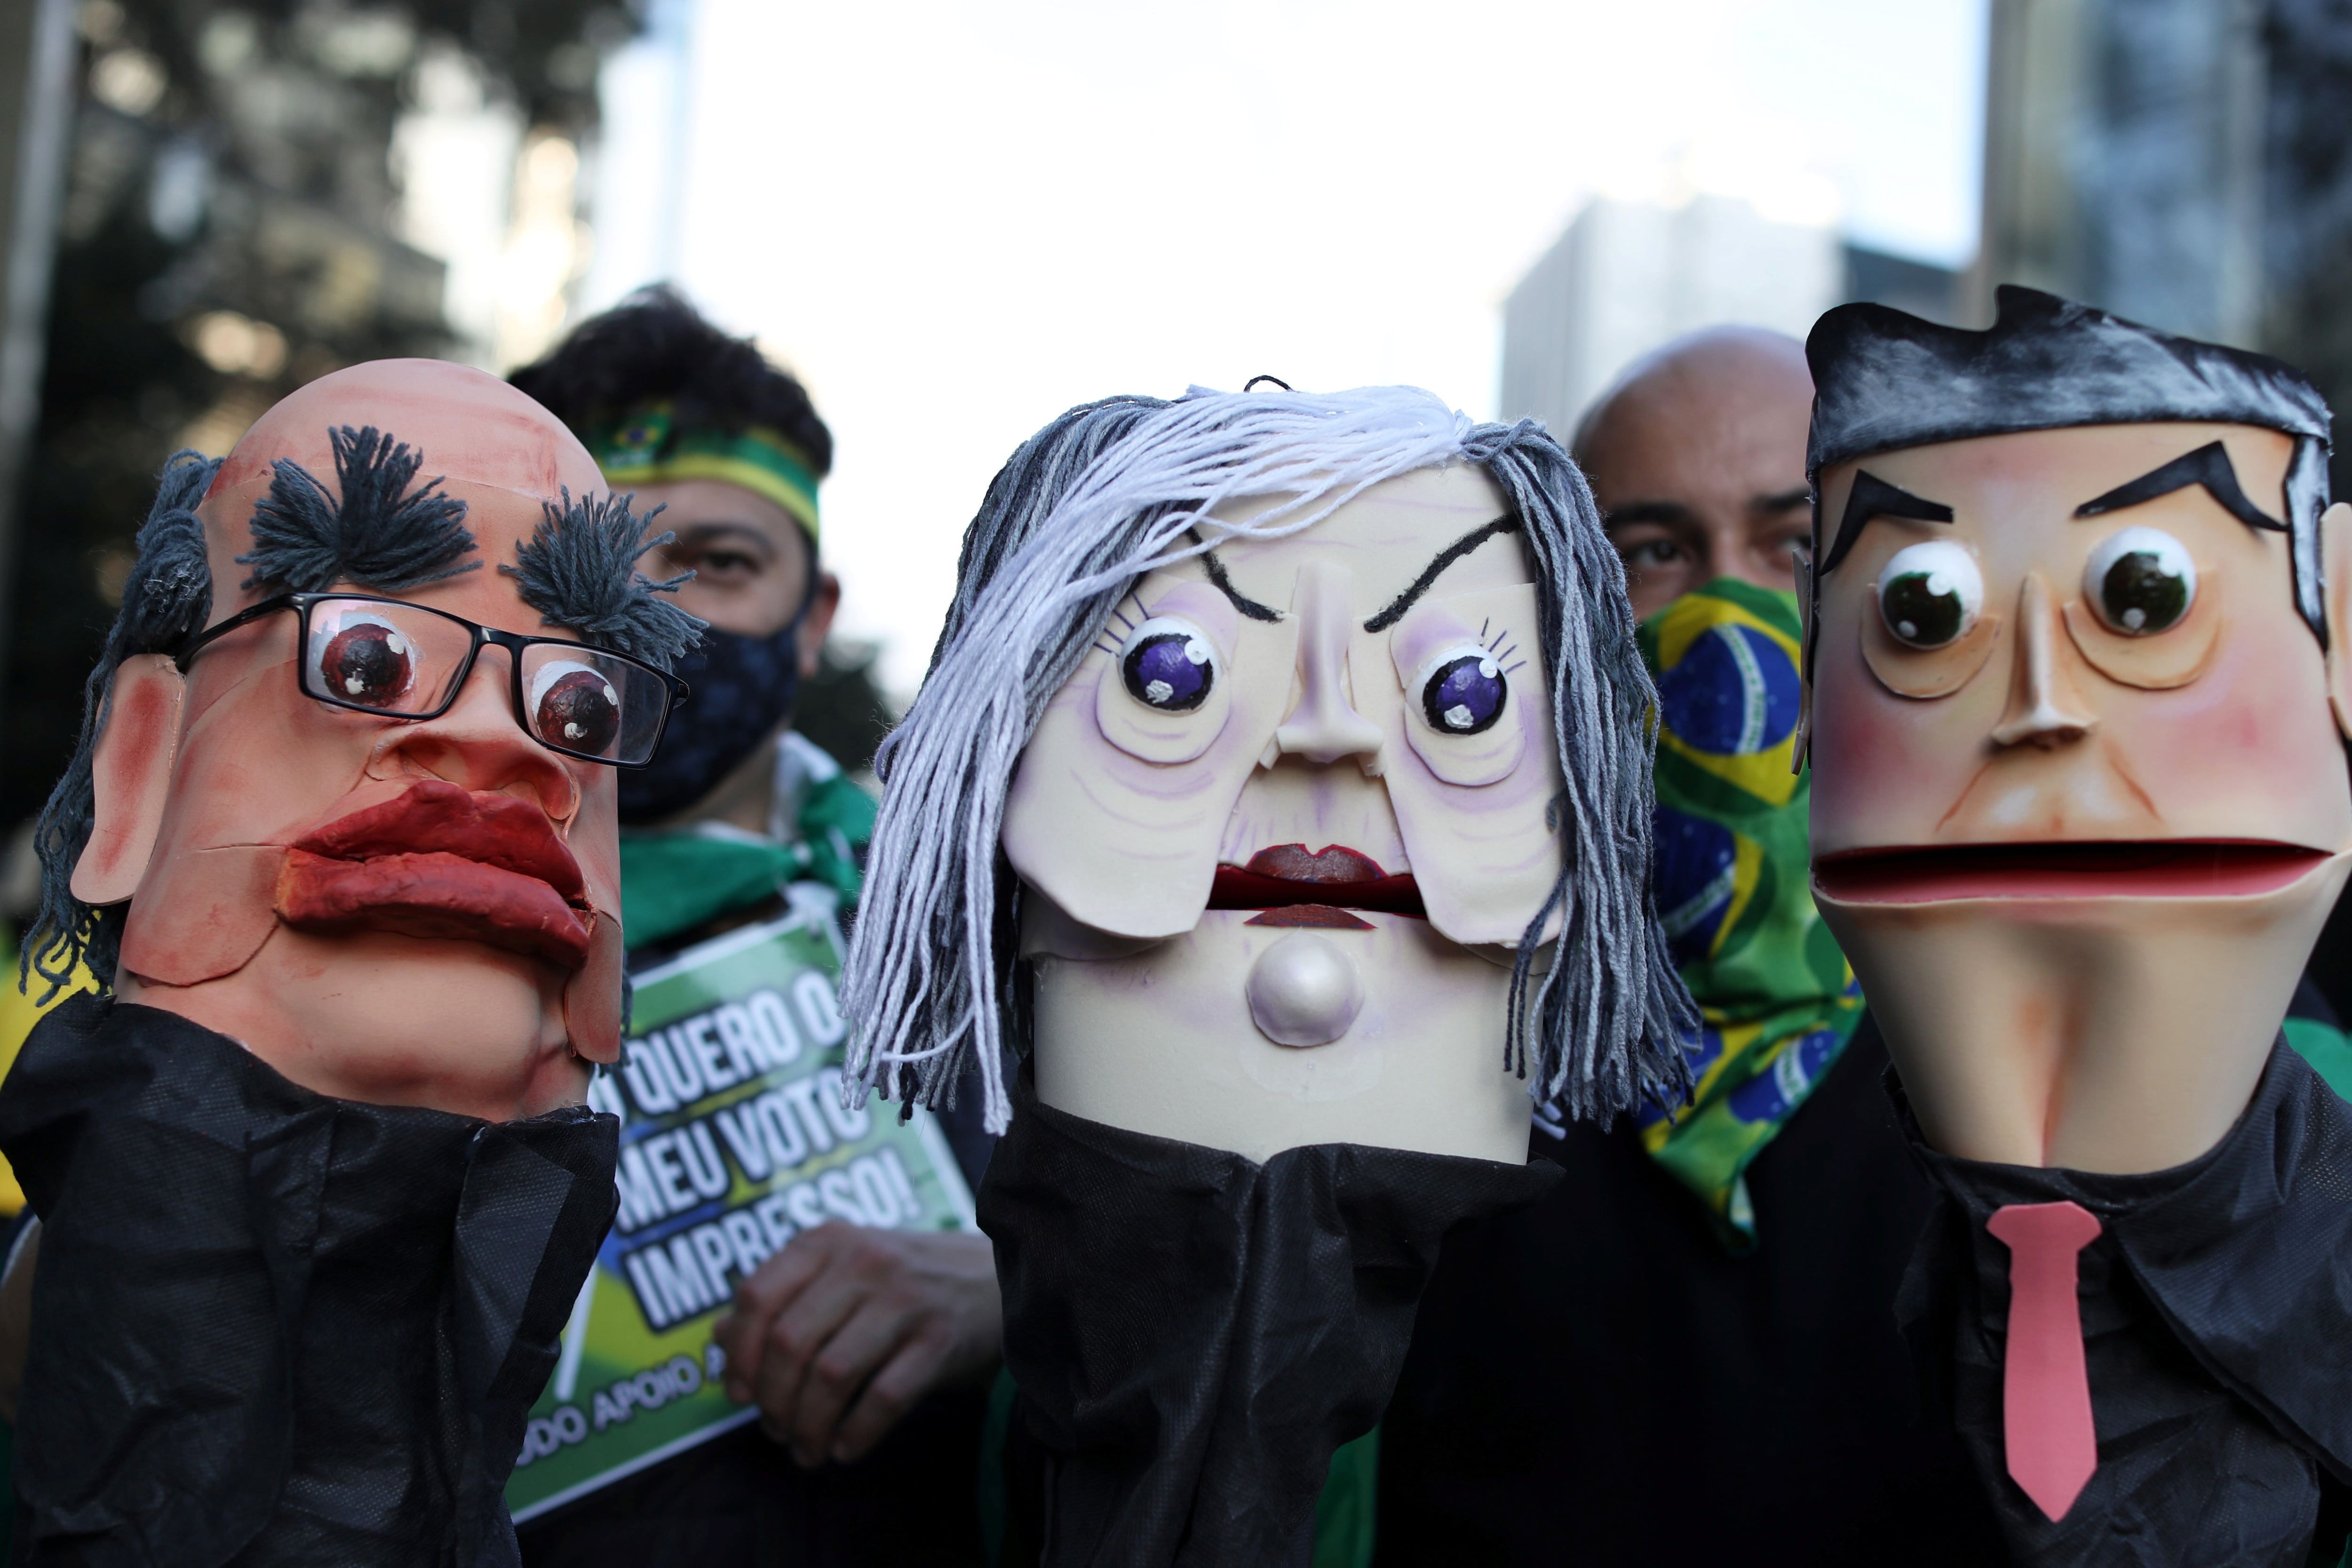 Bonecos simulam os ministros do STF no protesto de apoiadores de Bolsonaro neste domingo, na avenida Paulista.